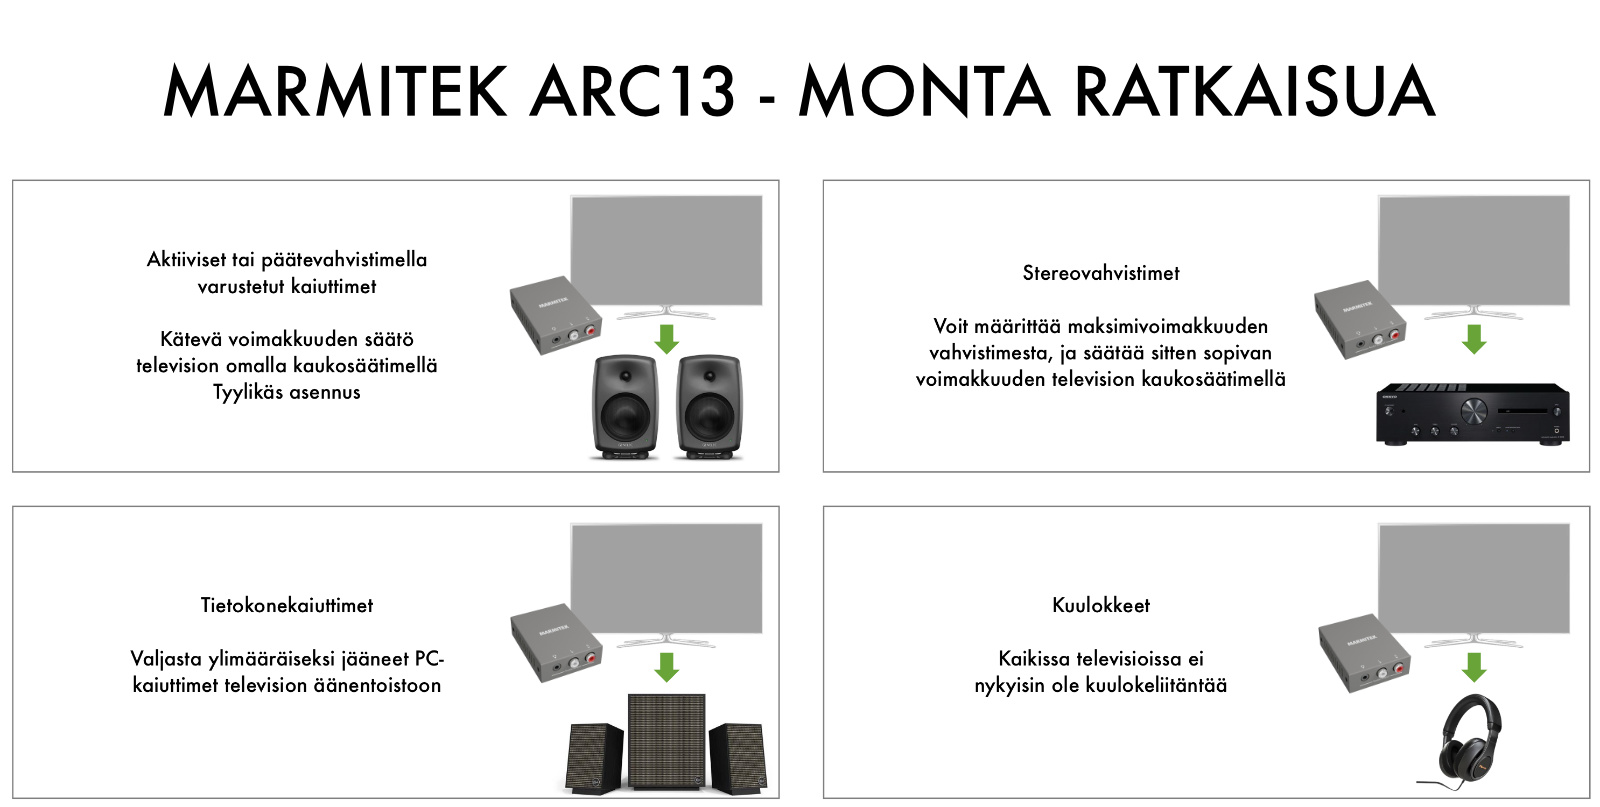 marmitek connect ARC13 radiokulma.fi kaavio Marmitek Connect ARC13 HDMI ARC -muunnin Lisää HDMI liitäntä äänenvoimakkuuden säädöllä nykyisille aktiivikaiuttimillesi, vahvistimellesi tai kuulokkeillesi. Marmitek ARC13 on erittäin pienikokoinen laite, joka asennetaan television HDMI ARC -liitännän ja aktiivikaiuttimien (tai päätevahvistimen ja passiivikaiuttimien) väliin. Miniatyyrikokoisena laite jää näkymättömiin joko television tai kalusteen taakse.